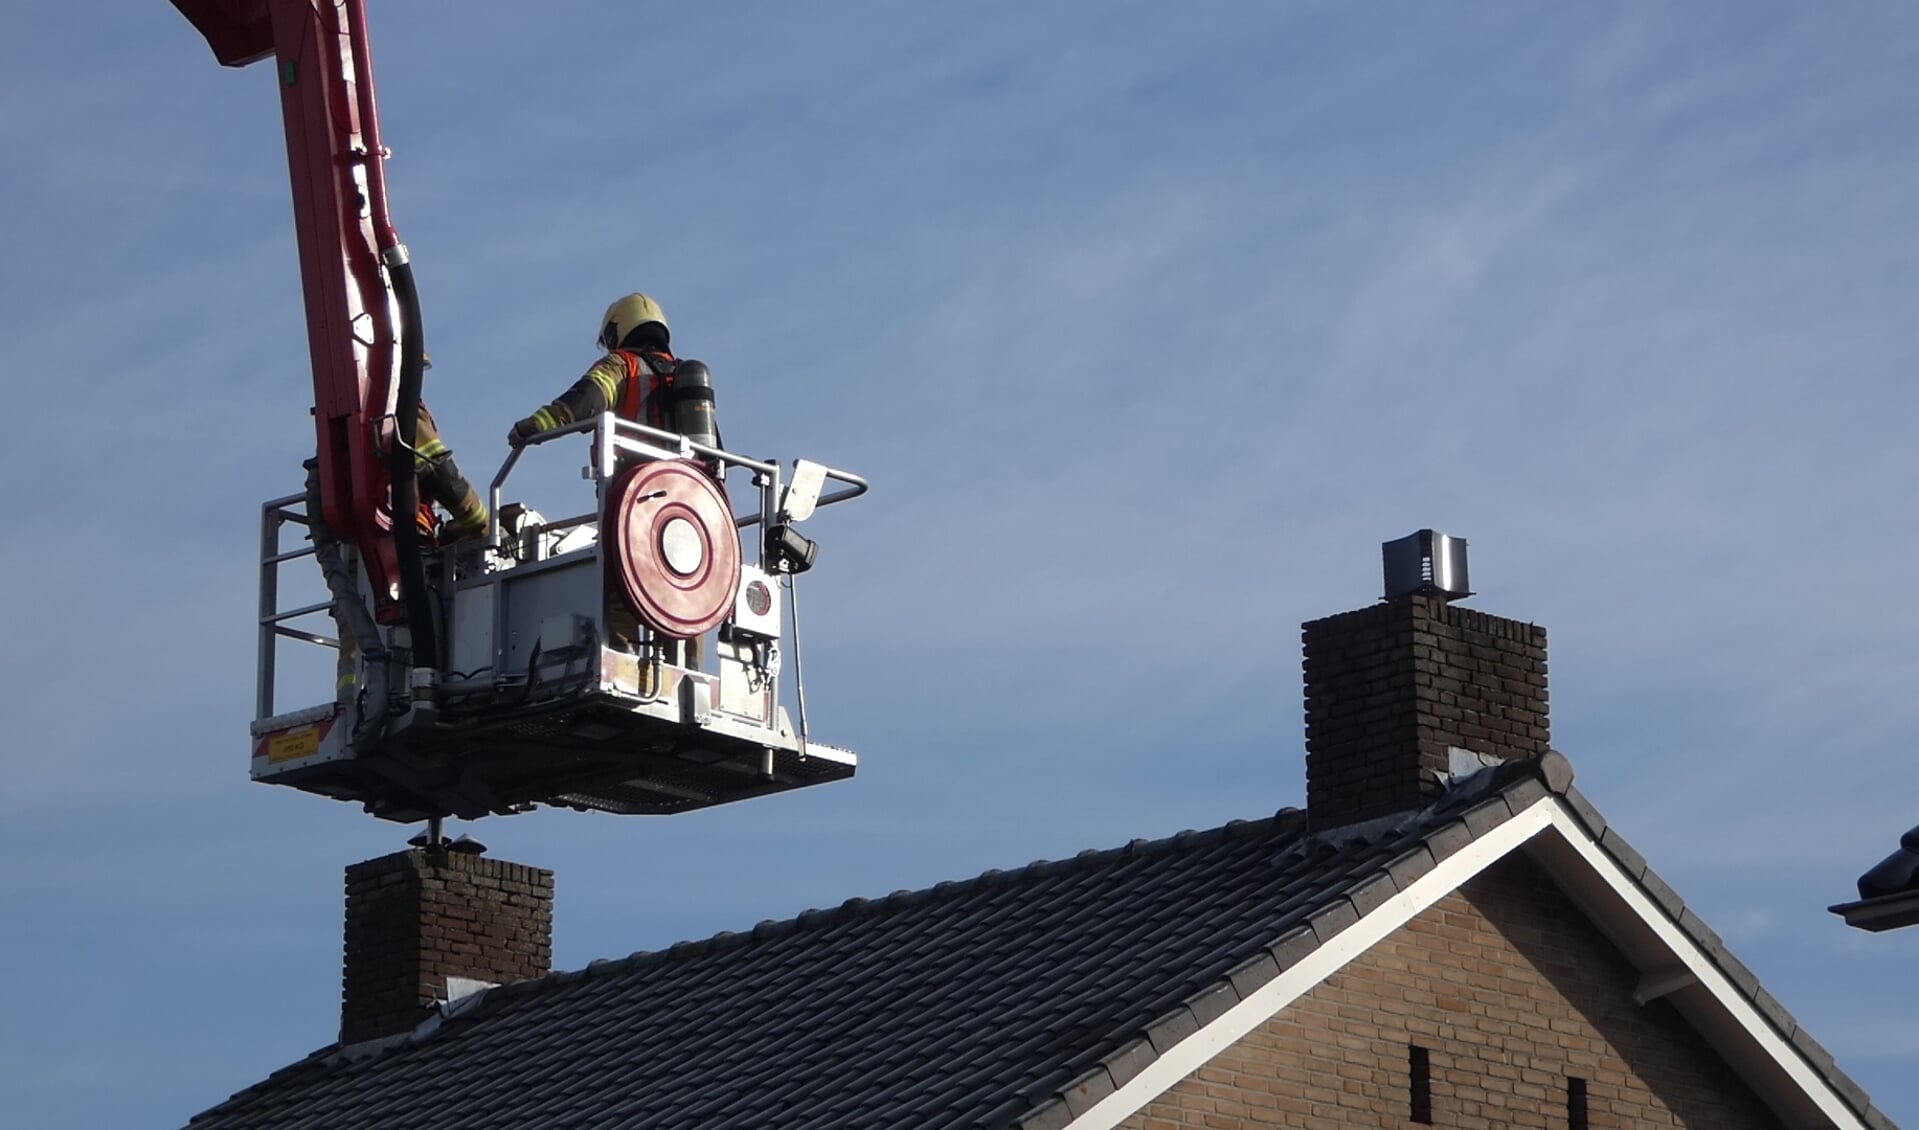 Brandweer opgeroepen voor schoorsteenbrand in Geffen. (Foto: Thomas)